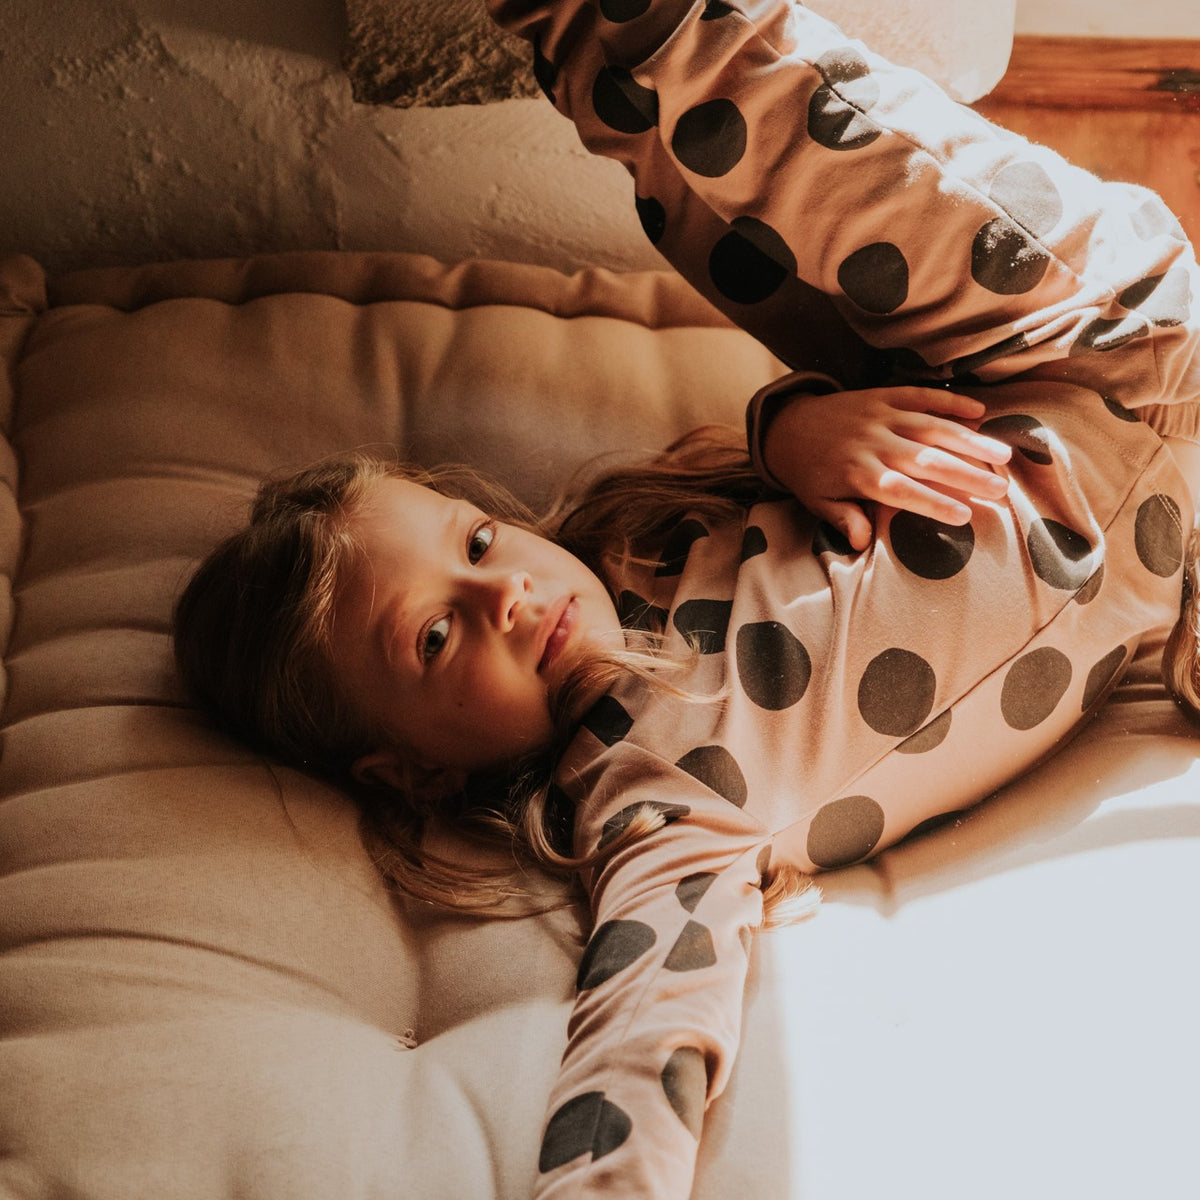 Pyjama Enfant Châtaigne